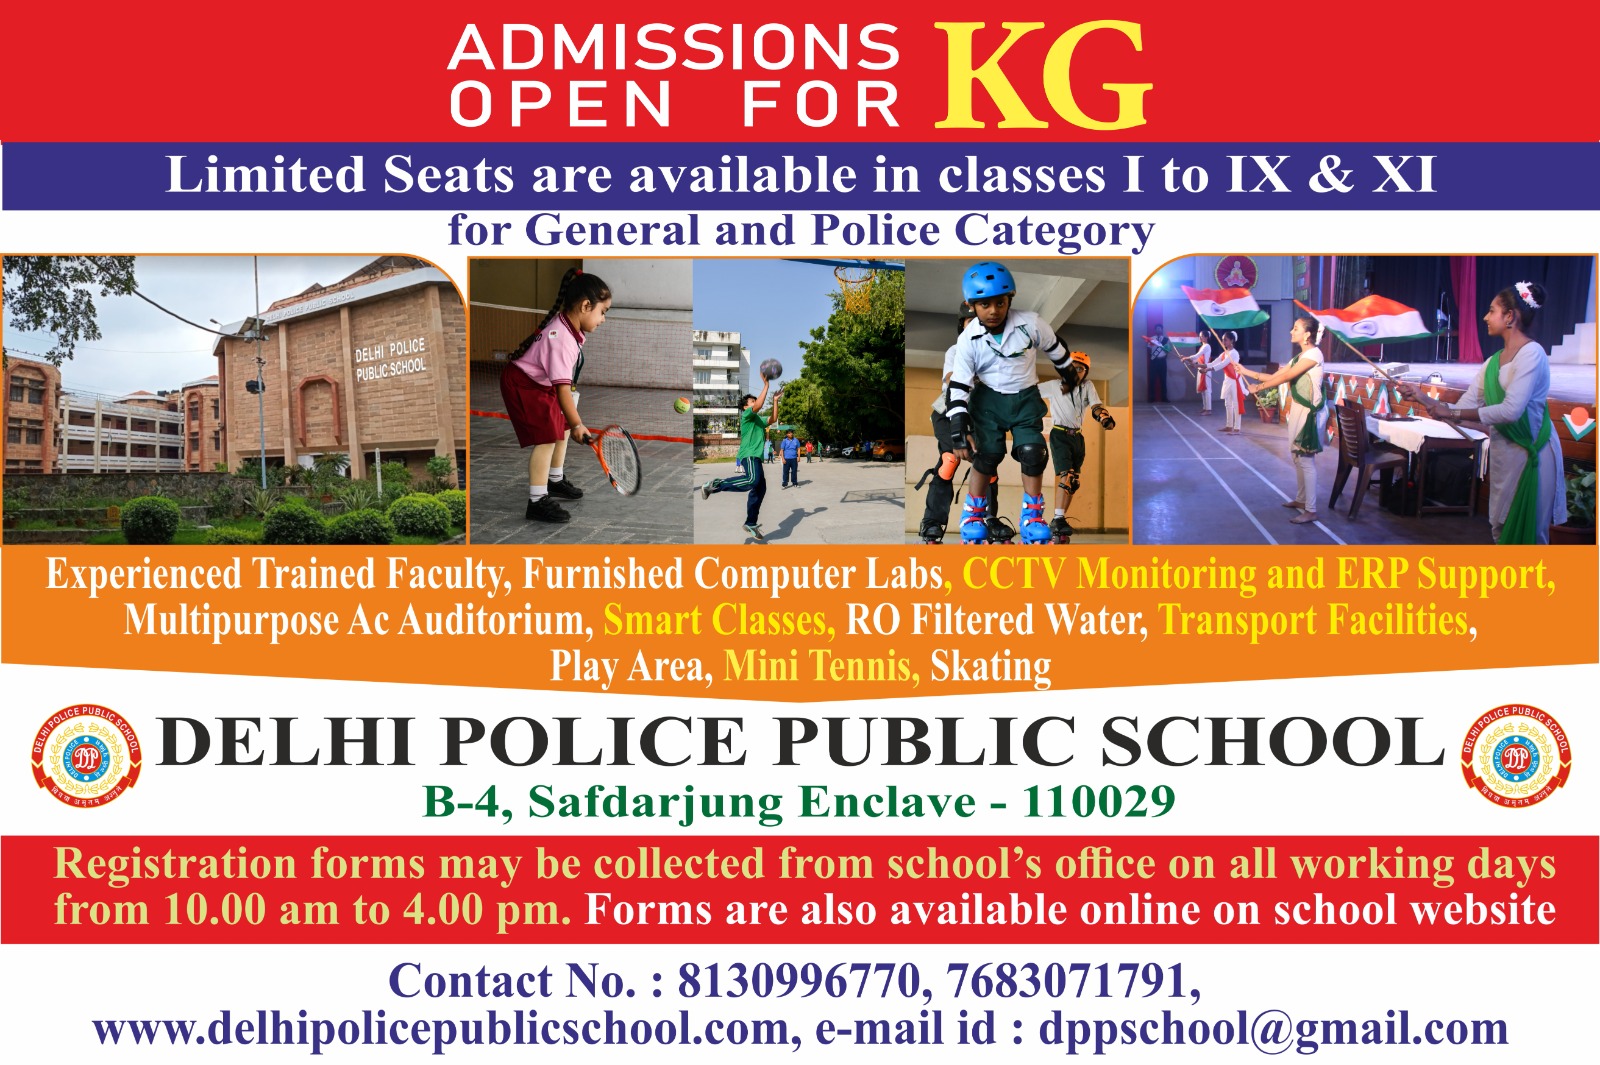 Delhi Police Public School